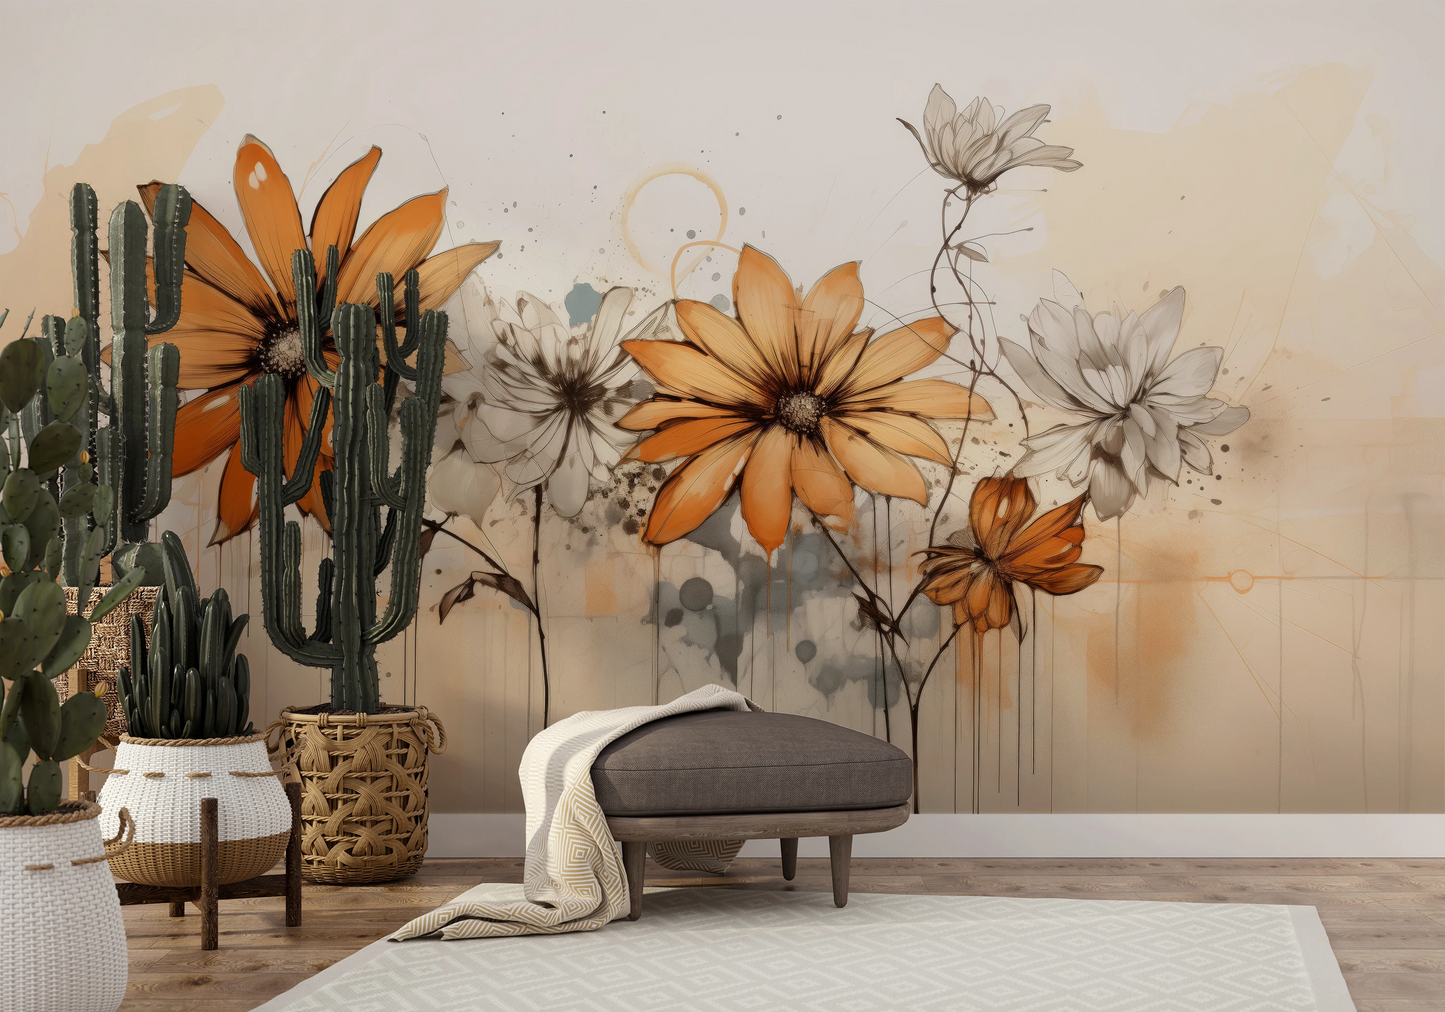 Fototapeta malowana o nazwie Abstract Florals pokazana w aranżacji wnętrza.